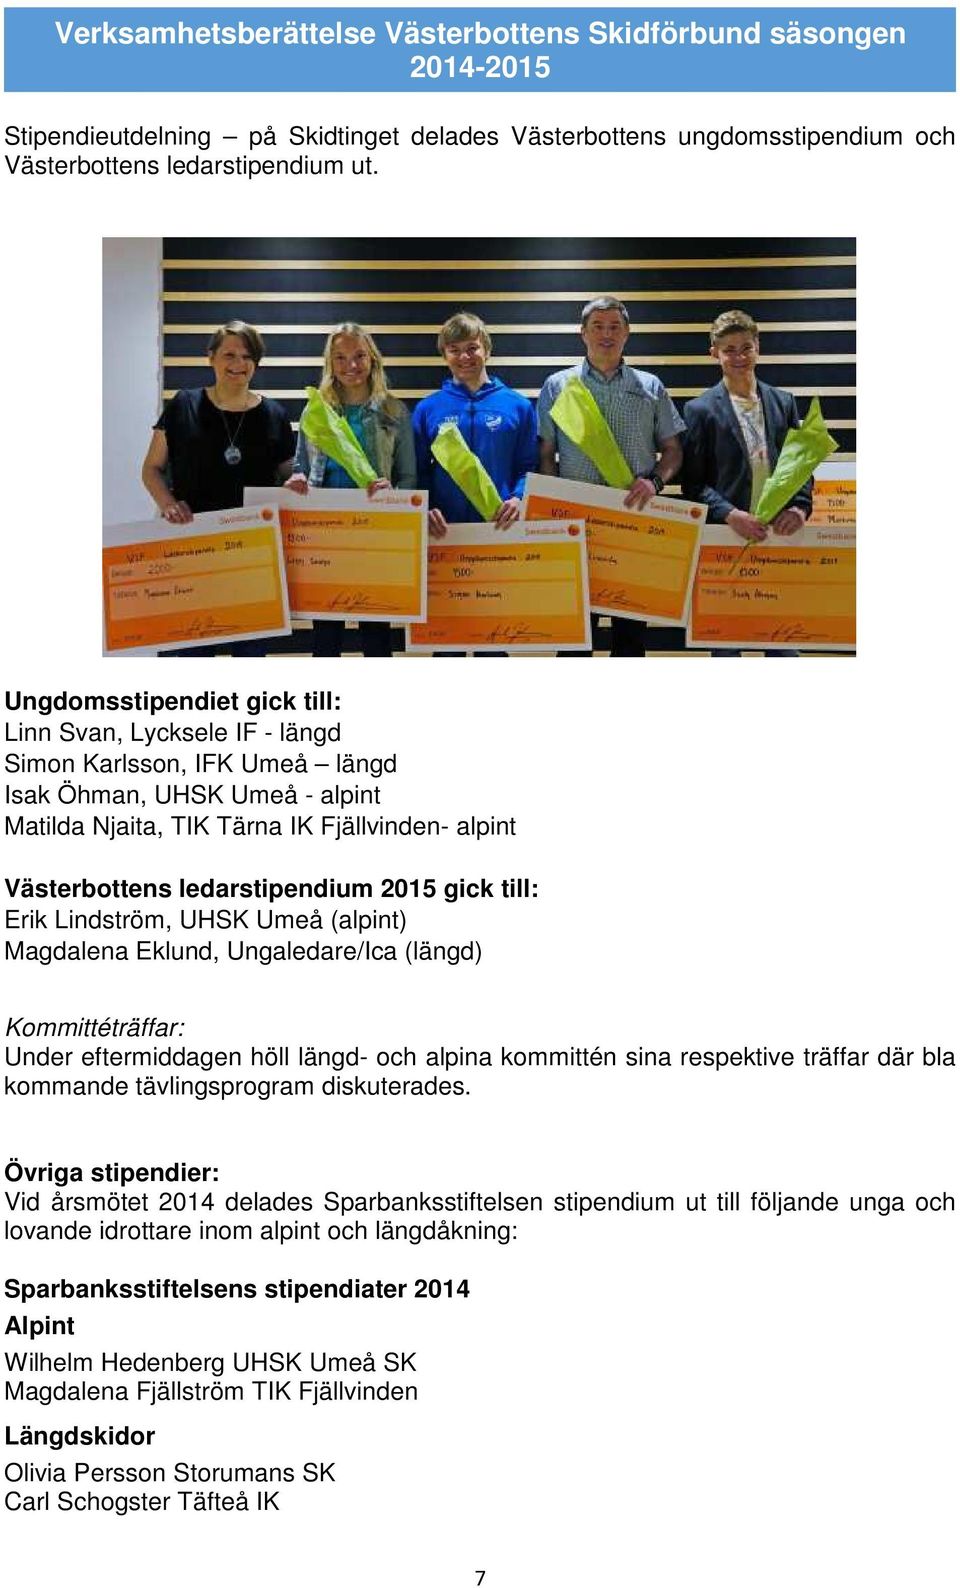 ledarstipendium 2015 gick till: Erik Lindström, UHSK Umeå (alpint) Magdalena Eklund, Ungaledare/Ica (längd) Kommittéträffar: Under eftermiddagen höll längd- och alpina kommittén sina respektive